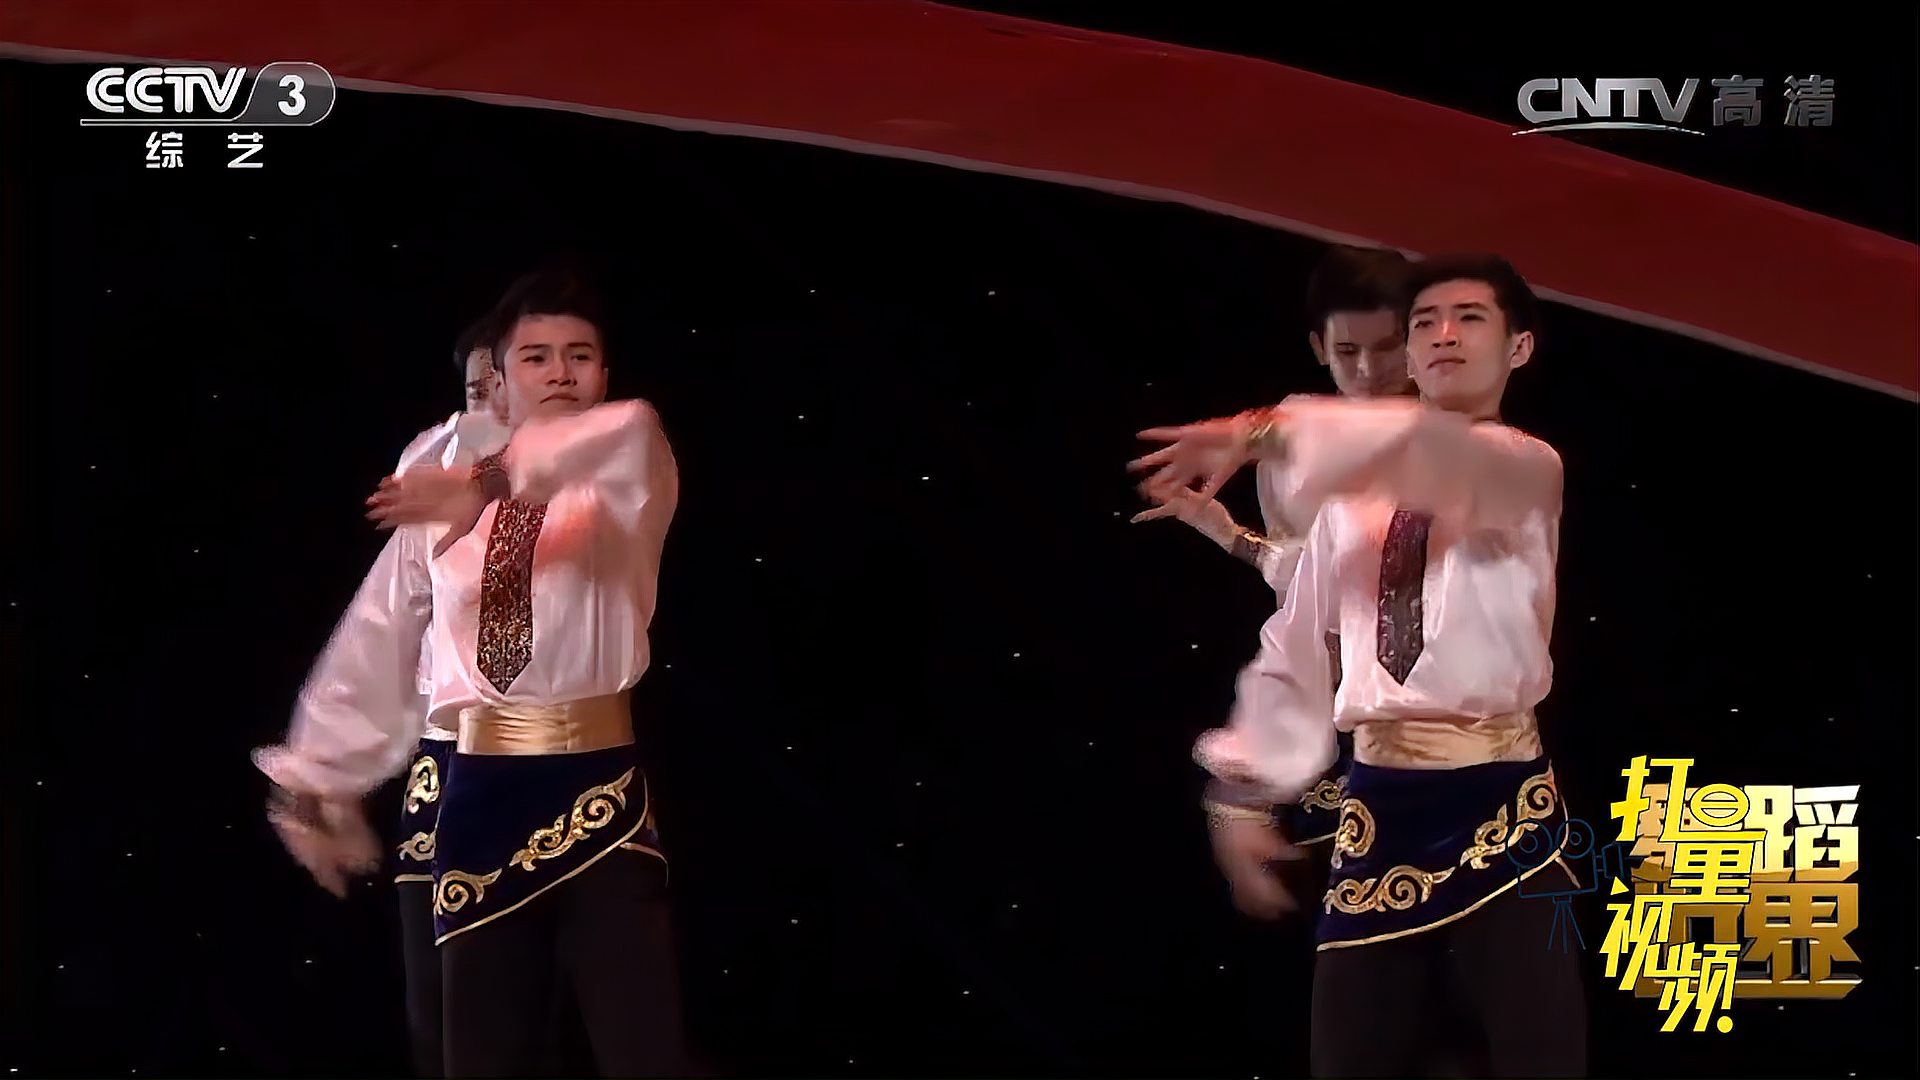 《维吾尔族赛乃姆表演组合》激情飞扬,不愧是科班出身丨舞蹈世界